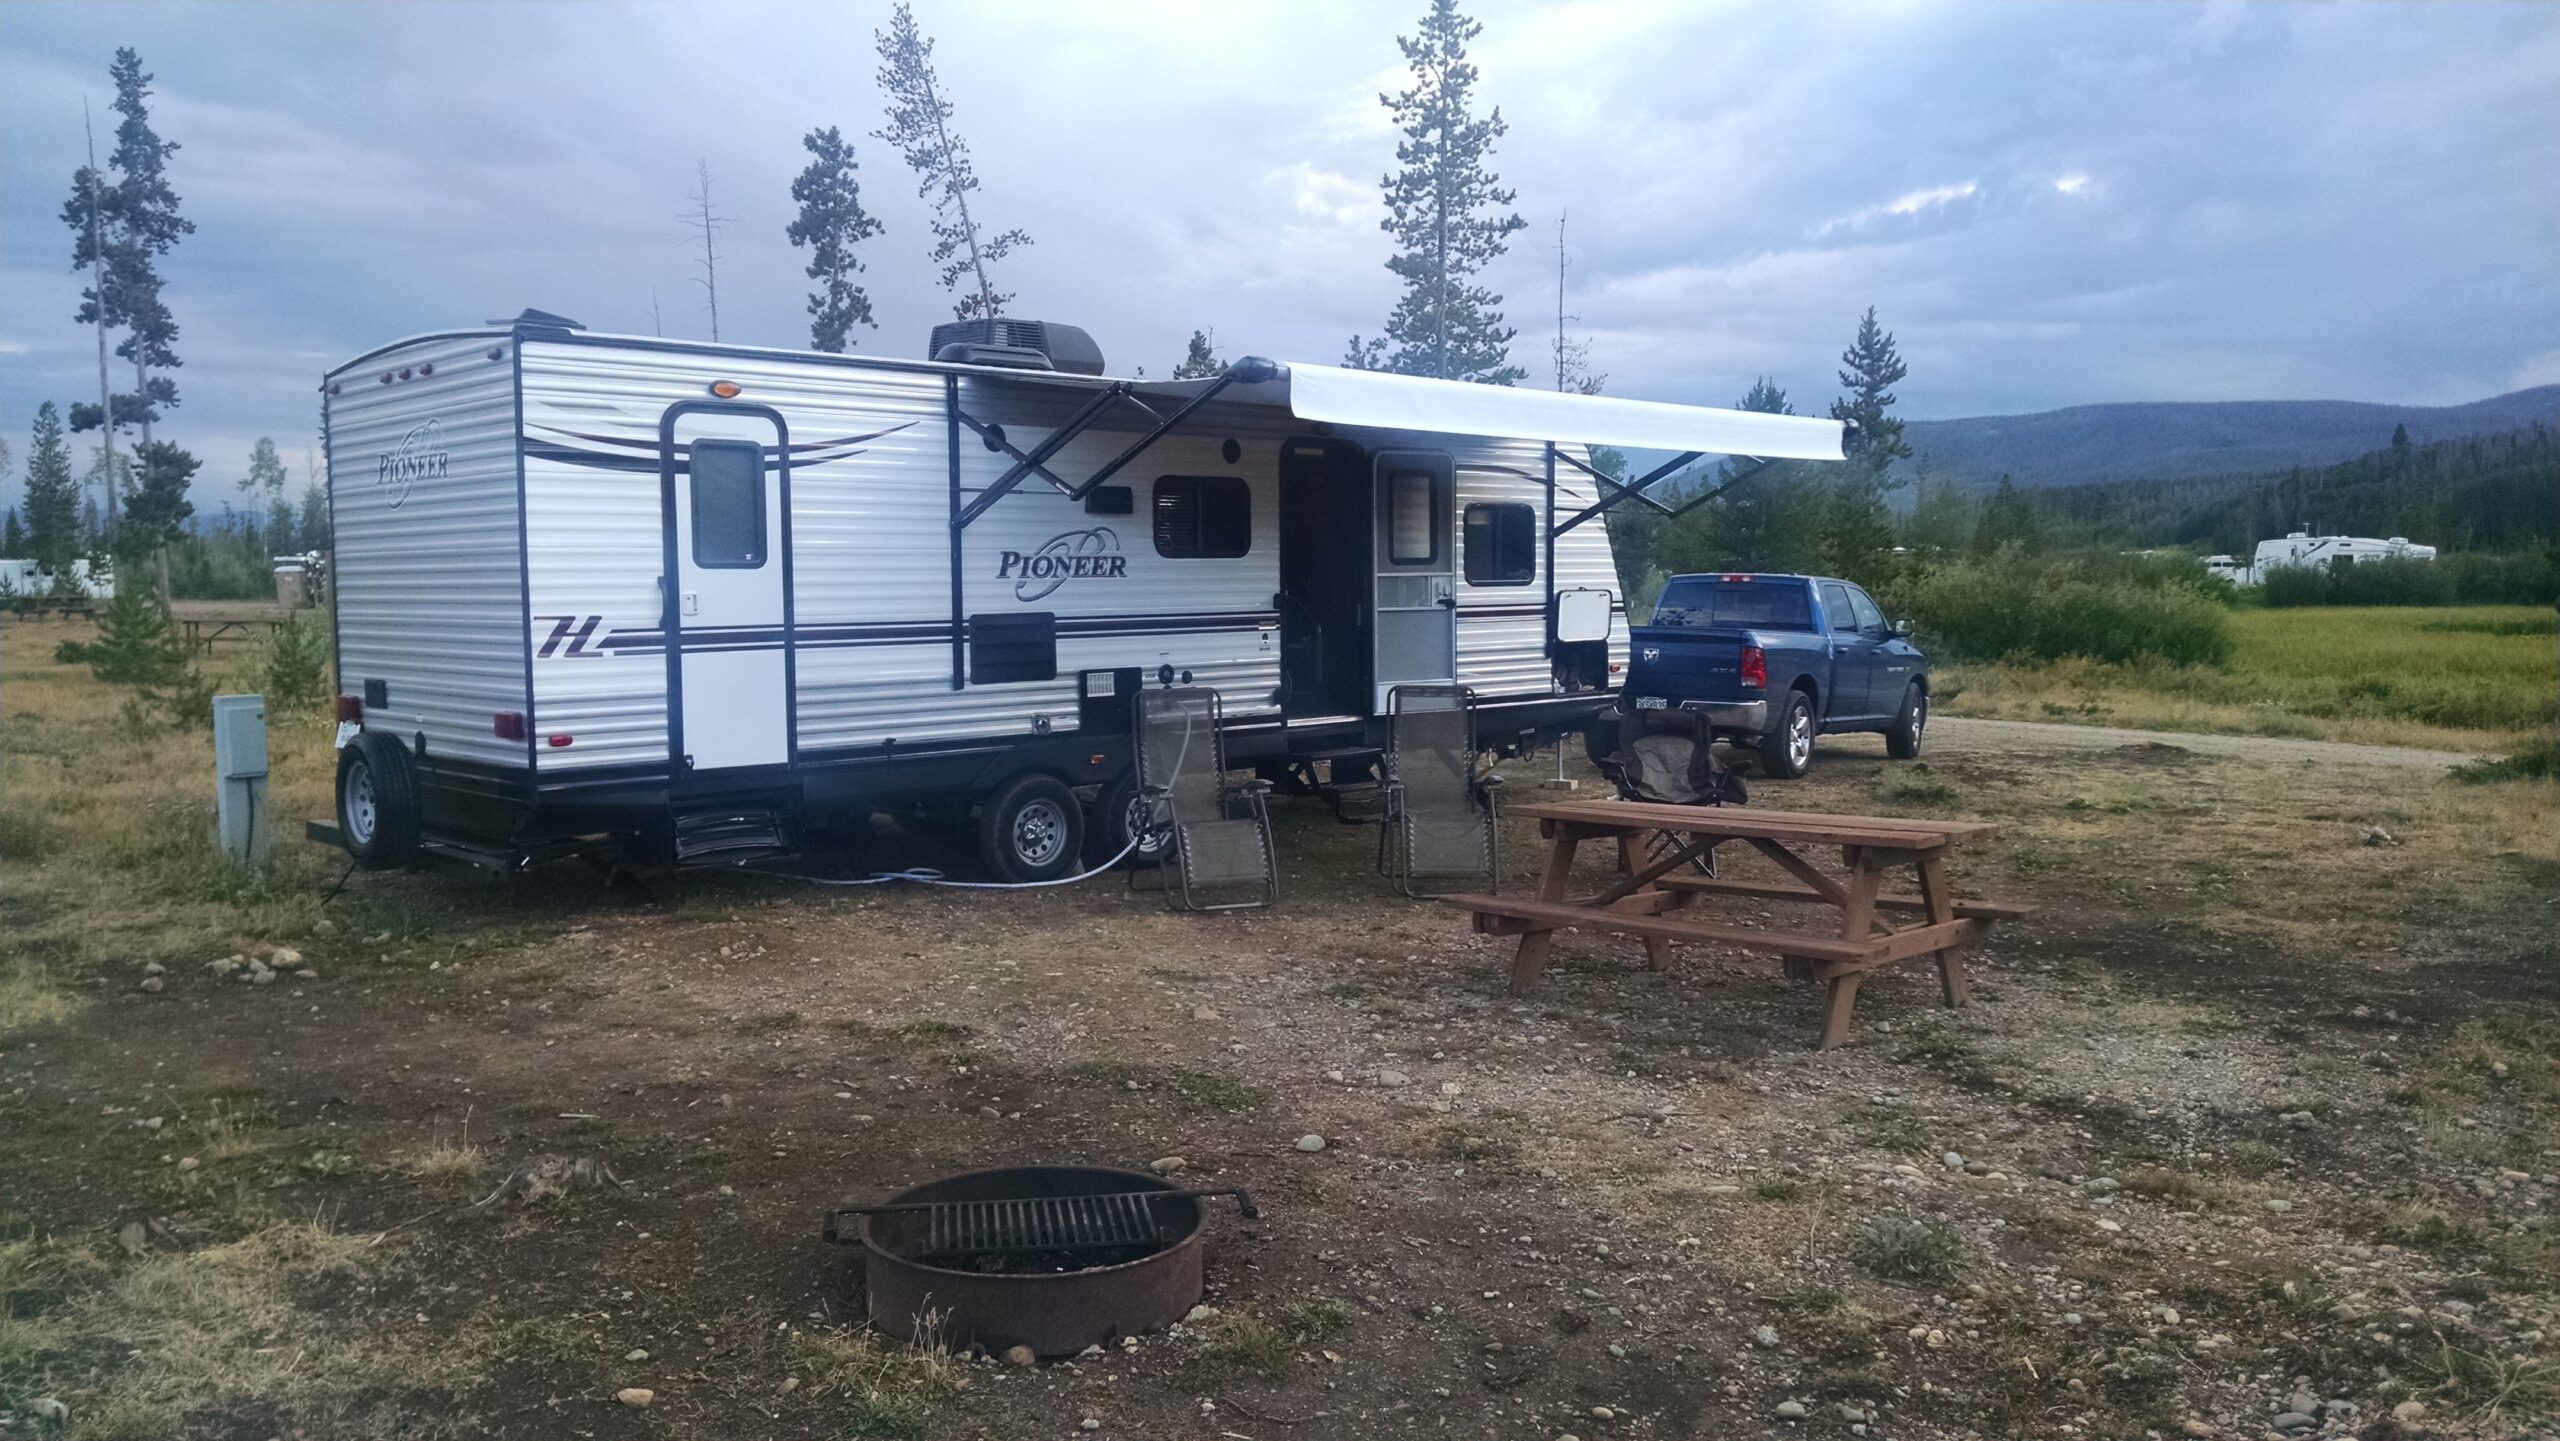 Camping at Winding River Resort